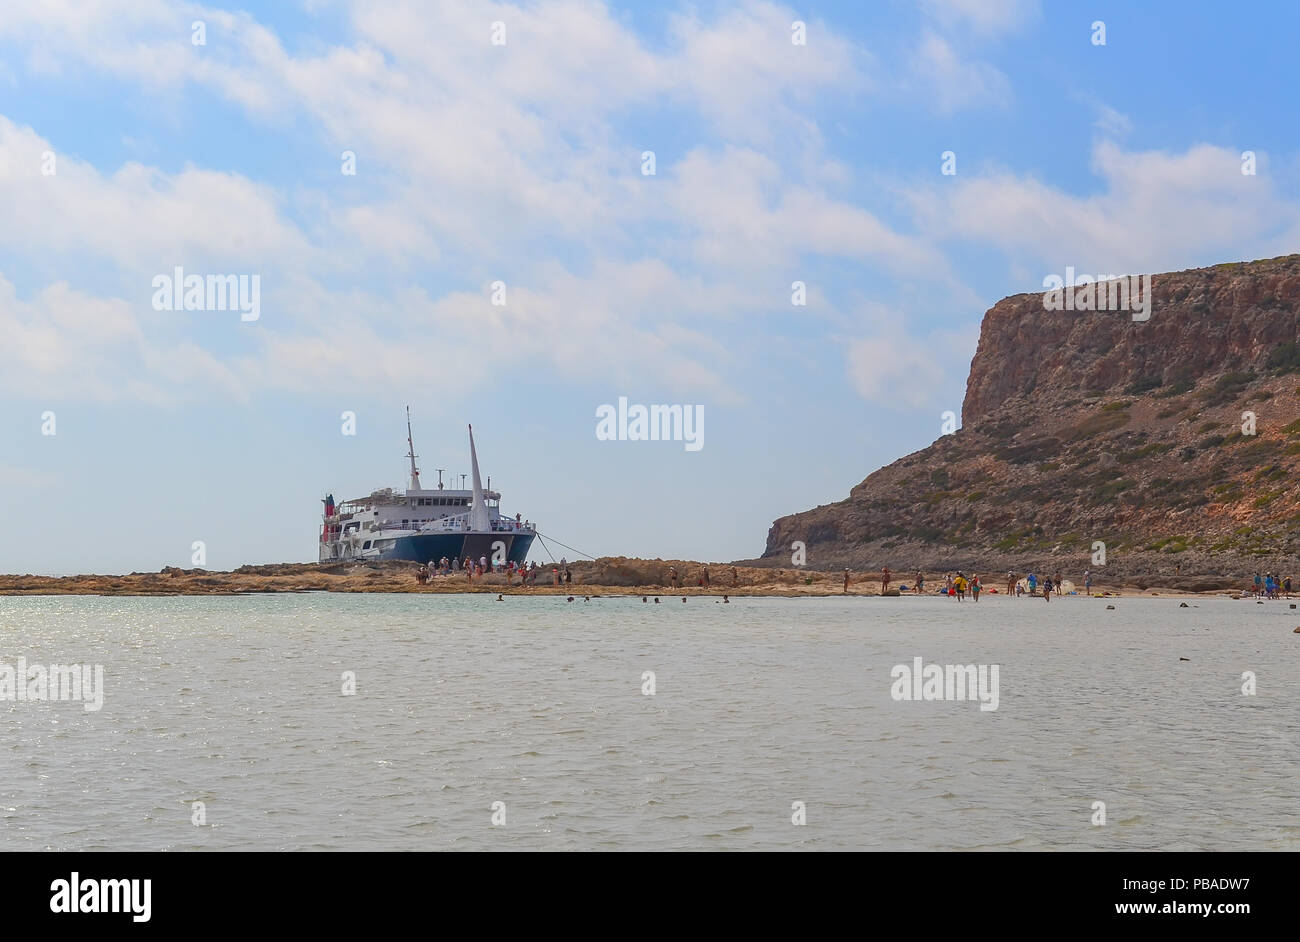 Un battello da diporto ha portato i turisti in una pittoresca baia sul Mare Mediterraneo, vista dall'alto. Spiaggia di Balos Baynear l'isola greca Gramvous Foto Stock